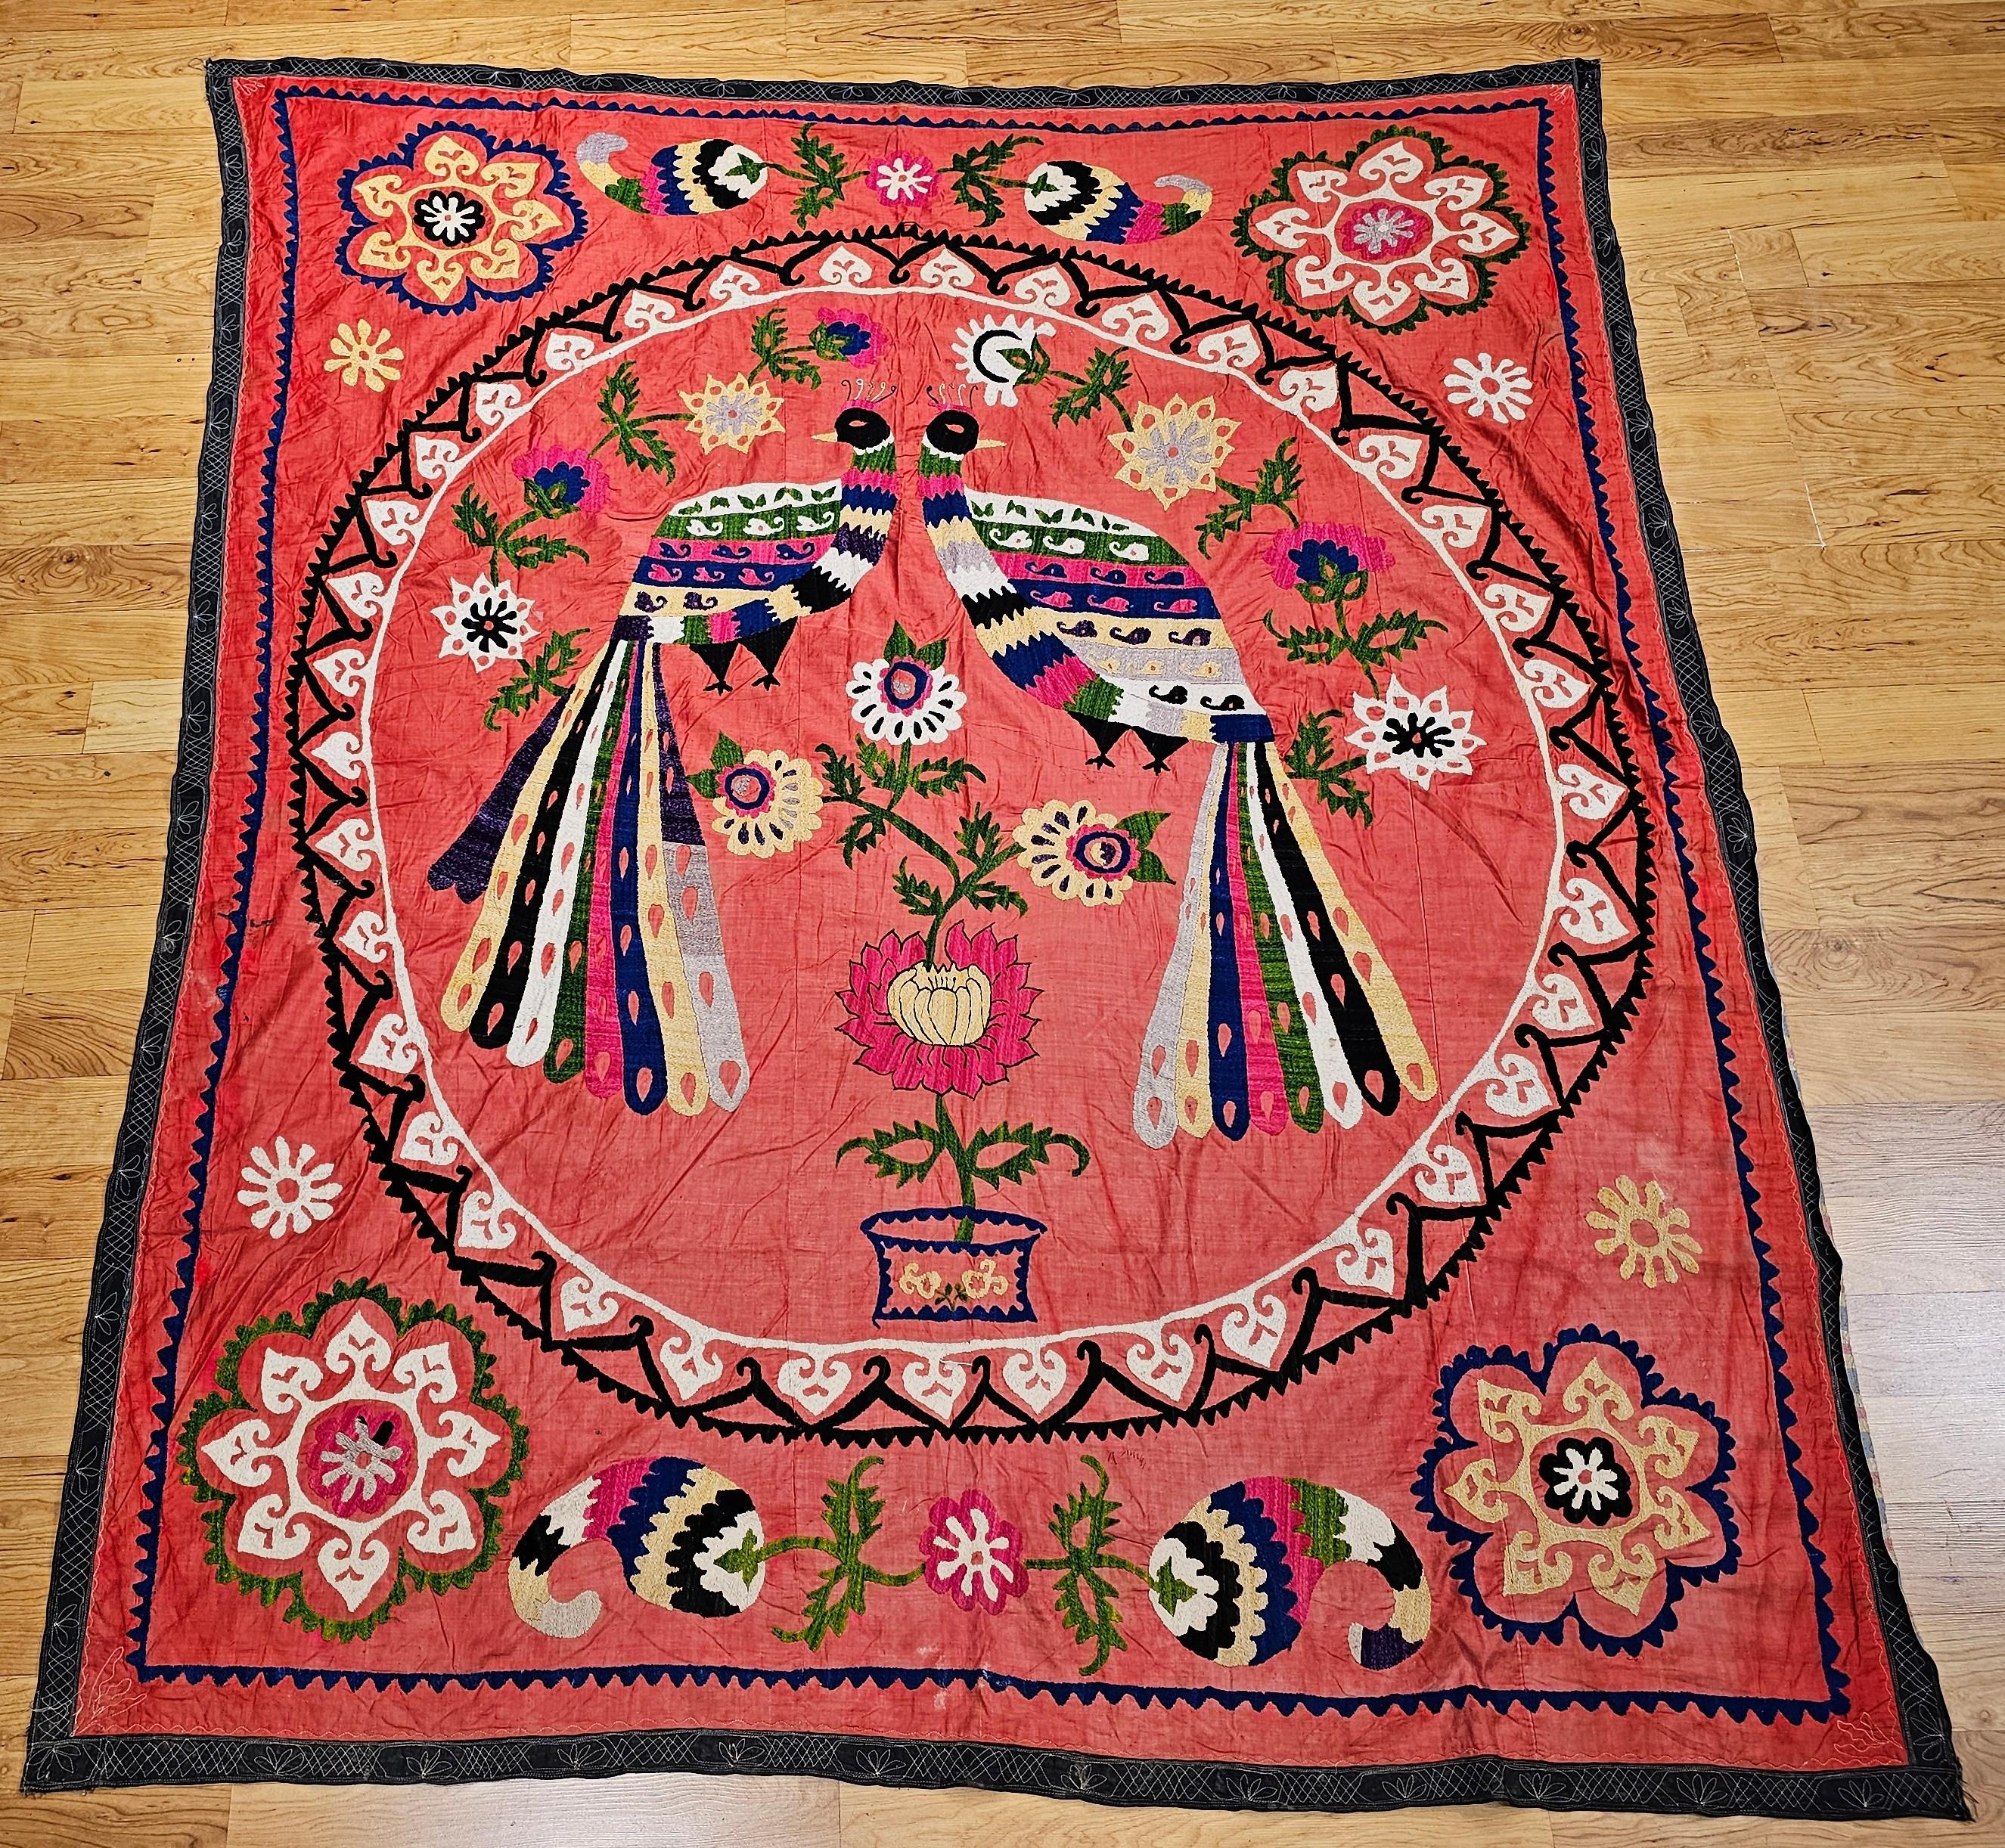 Vintage Seide Suzani Hand bestickt Wandteppich mit einem Paar Pfauen aus Usbekistan in Zentralasien.   Das Design dieser Suzani-Stickerei ist sehr einzigartig und unterscheidet sich von den meisten Suzani-Stickereien, die ein Medaillon-Design haben.